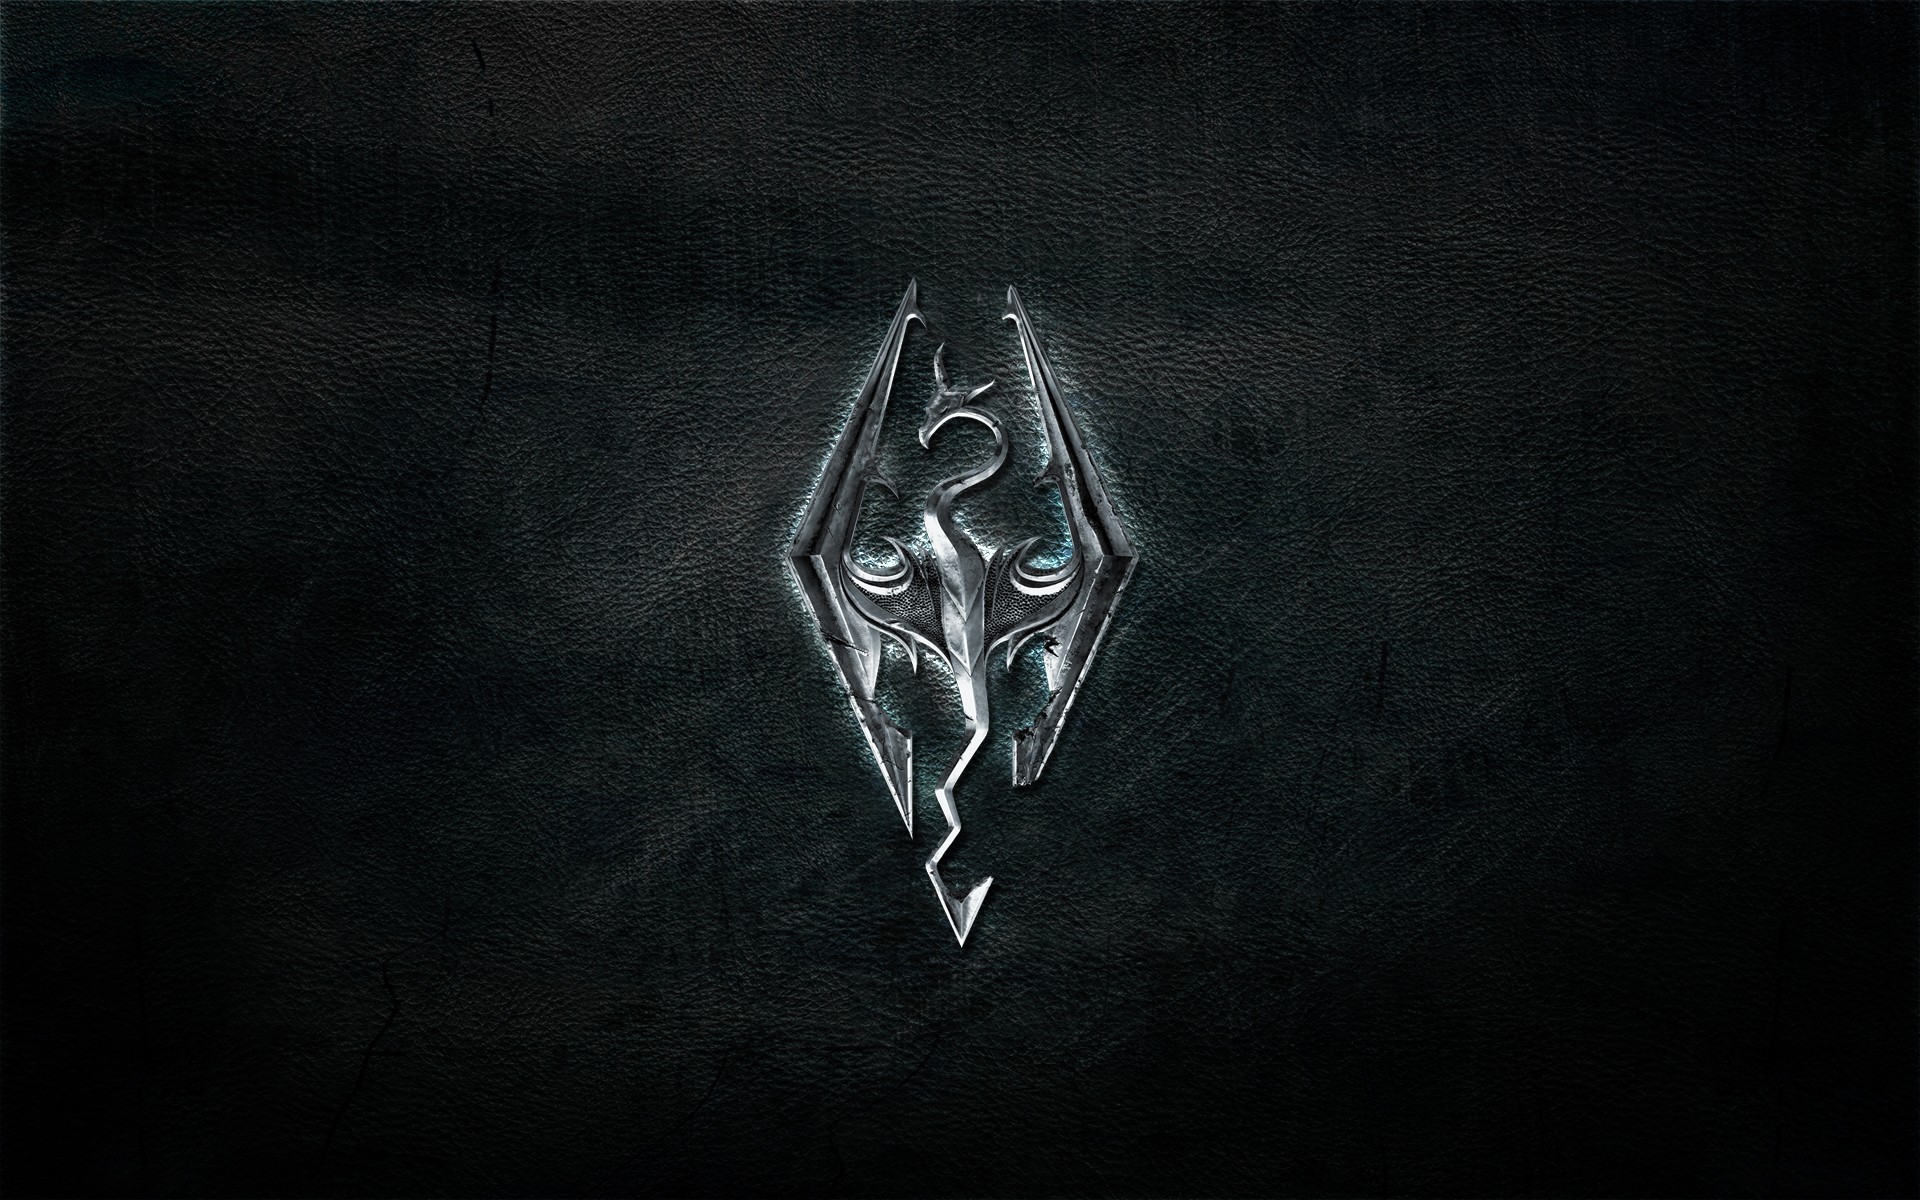 The Elder Scrolls V Skyrim Logo Wallpaper Wallpaperz Co